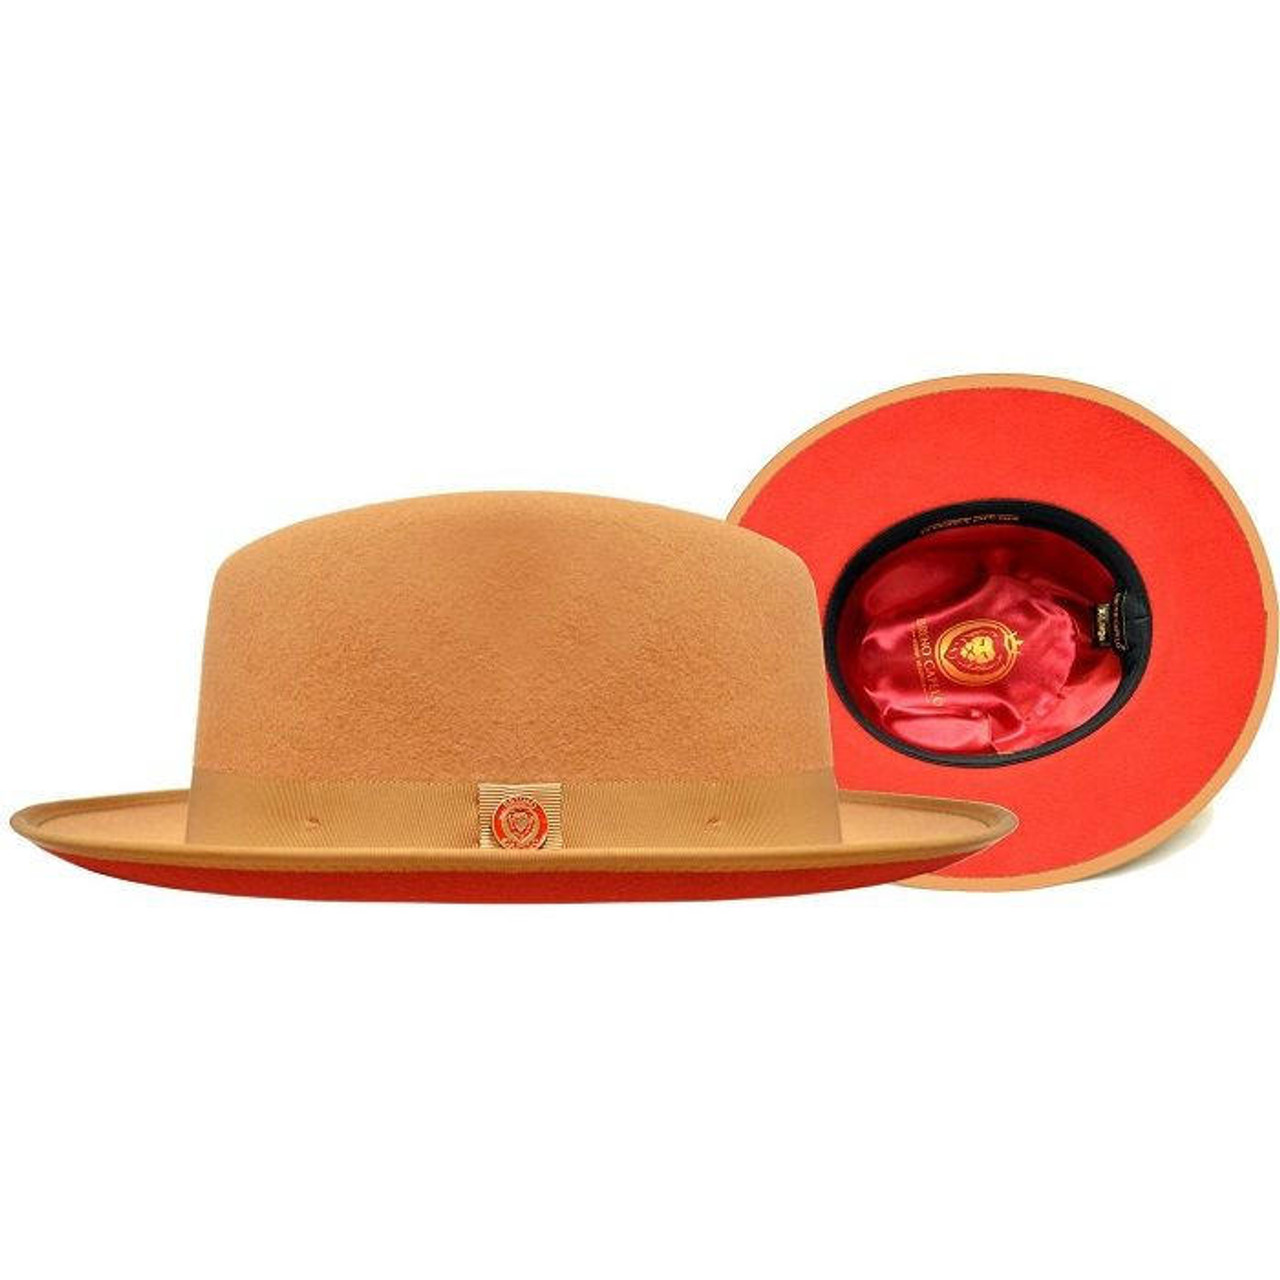 Bruno capelo hats